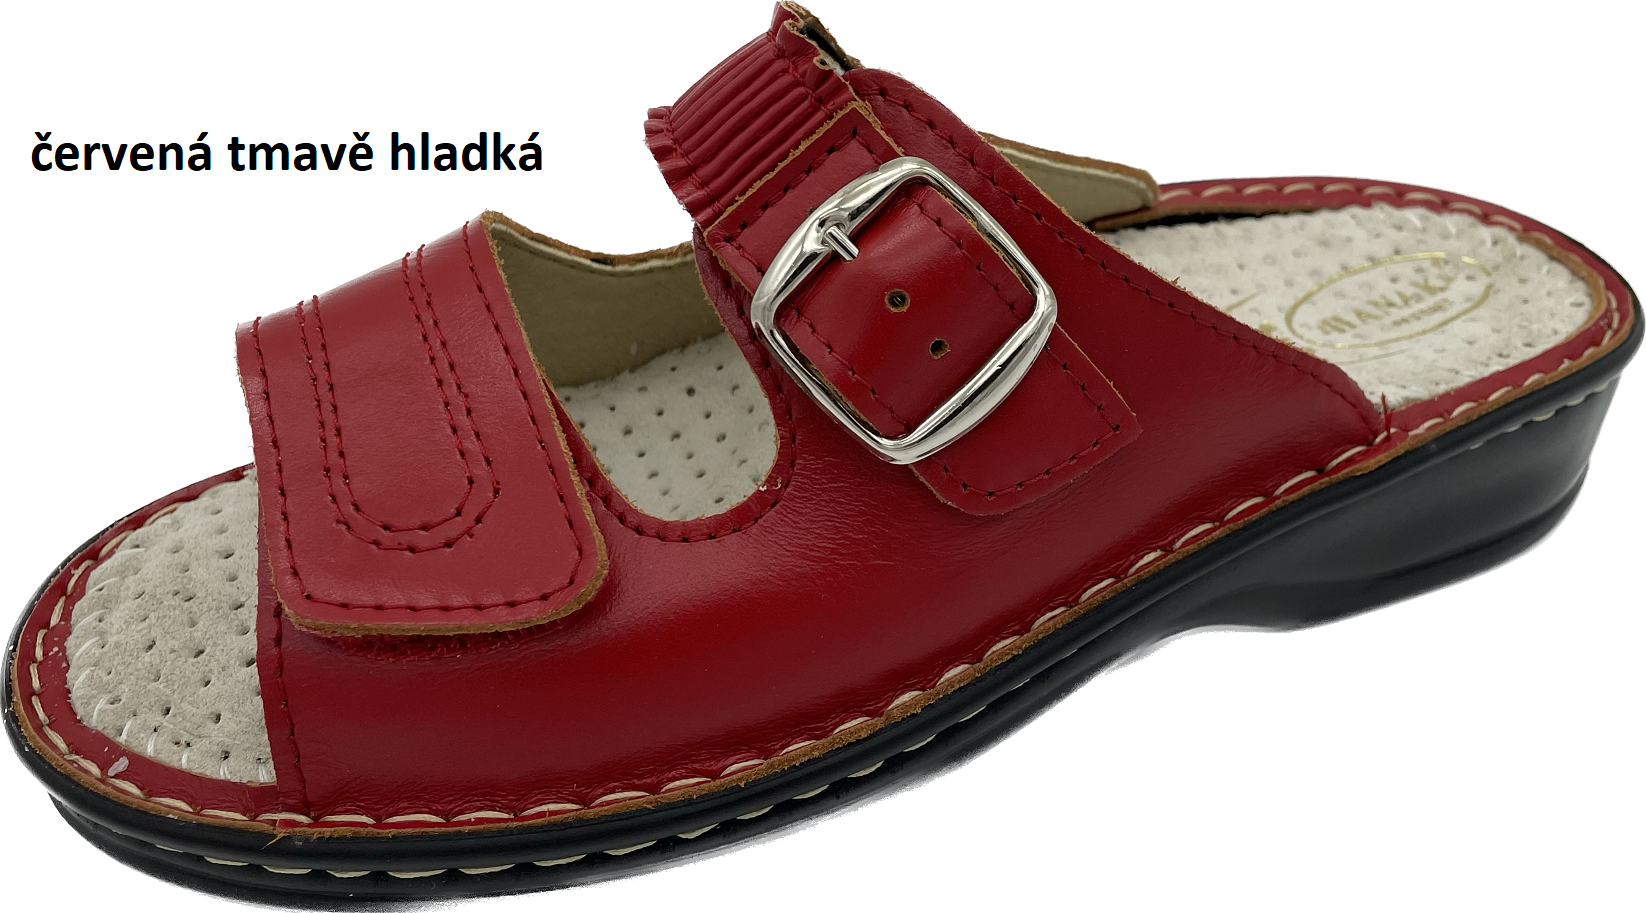 Boty Hanák vzor 305 - černá podešev Barva usně: červená hladká, Velikosti obuvi: 39